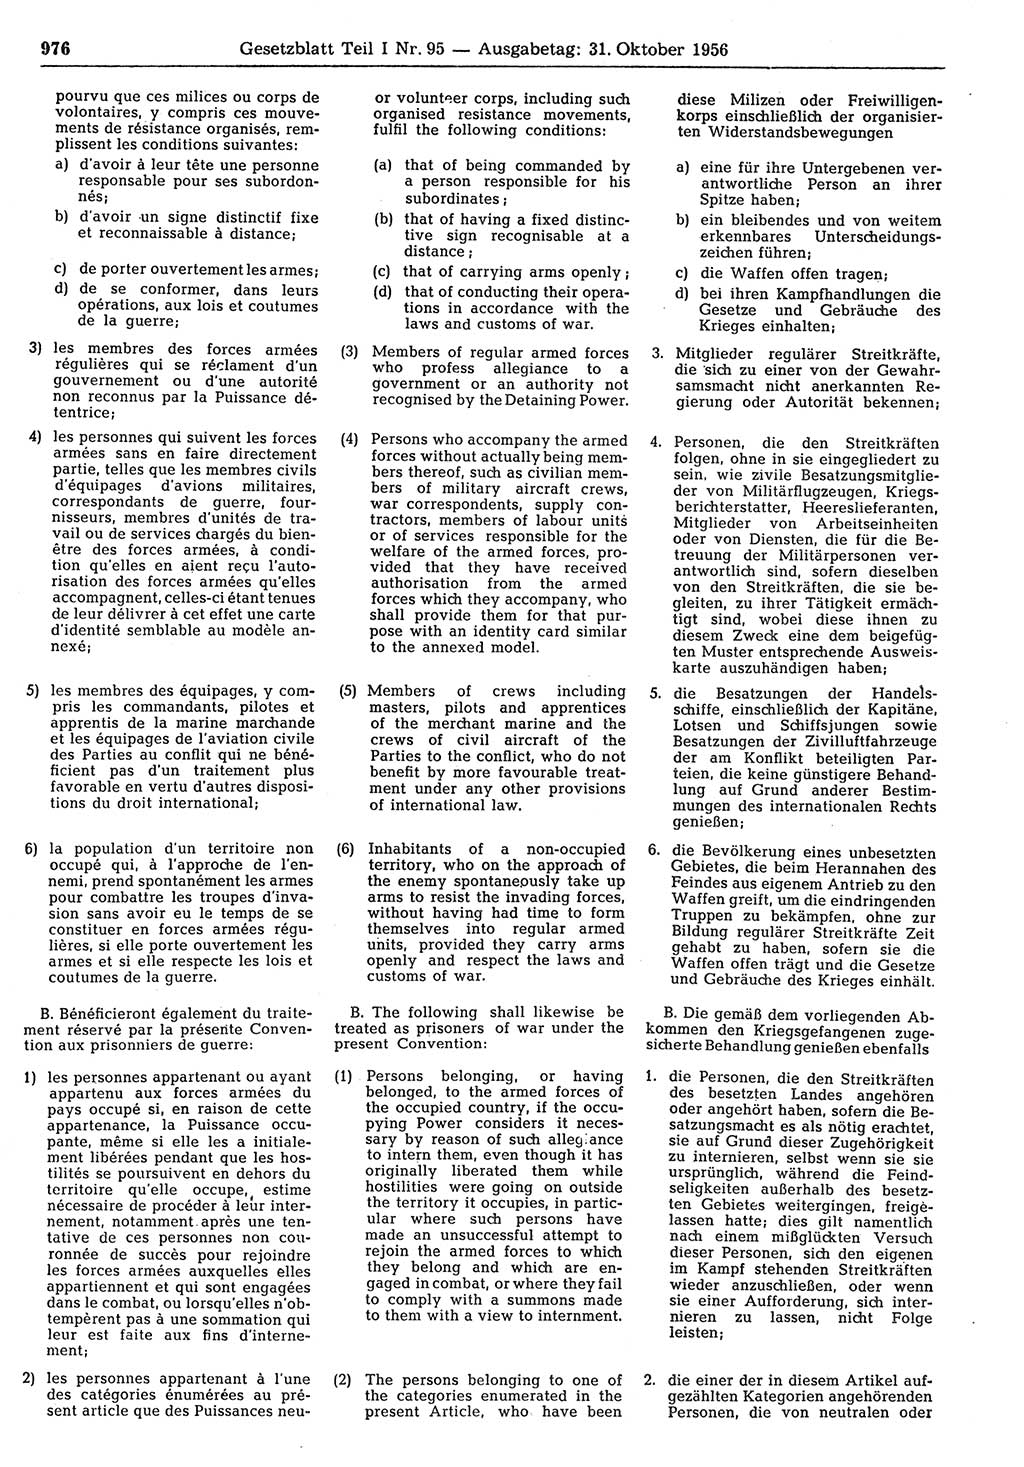 Gesetzblatt (GBl.) der Deutschen Demokratischen Republik (DDR) Teil Ⅰ 1956, Seite 976 (GBl. DDR Ⅰ 1956, S. 976)